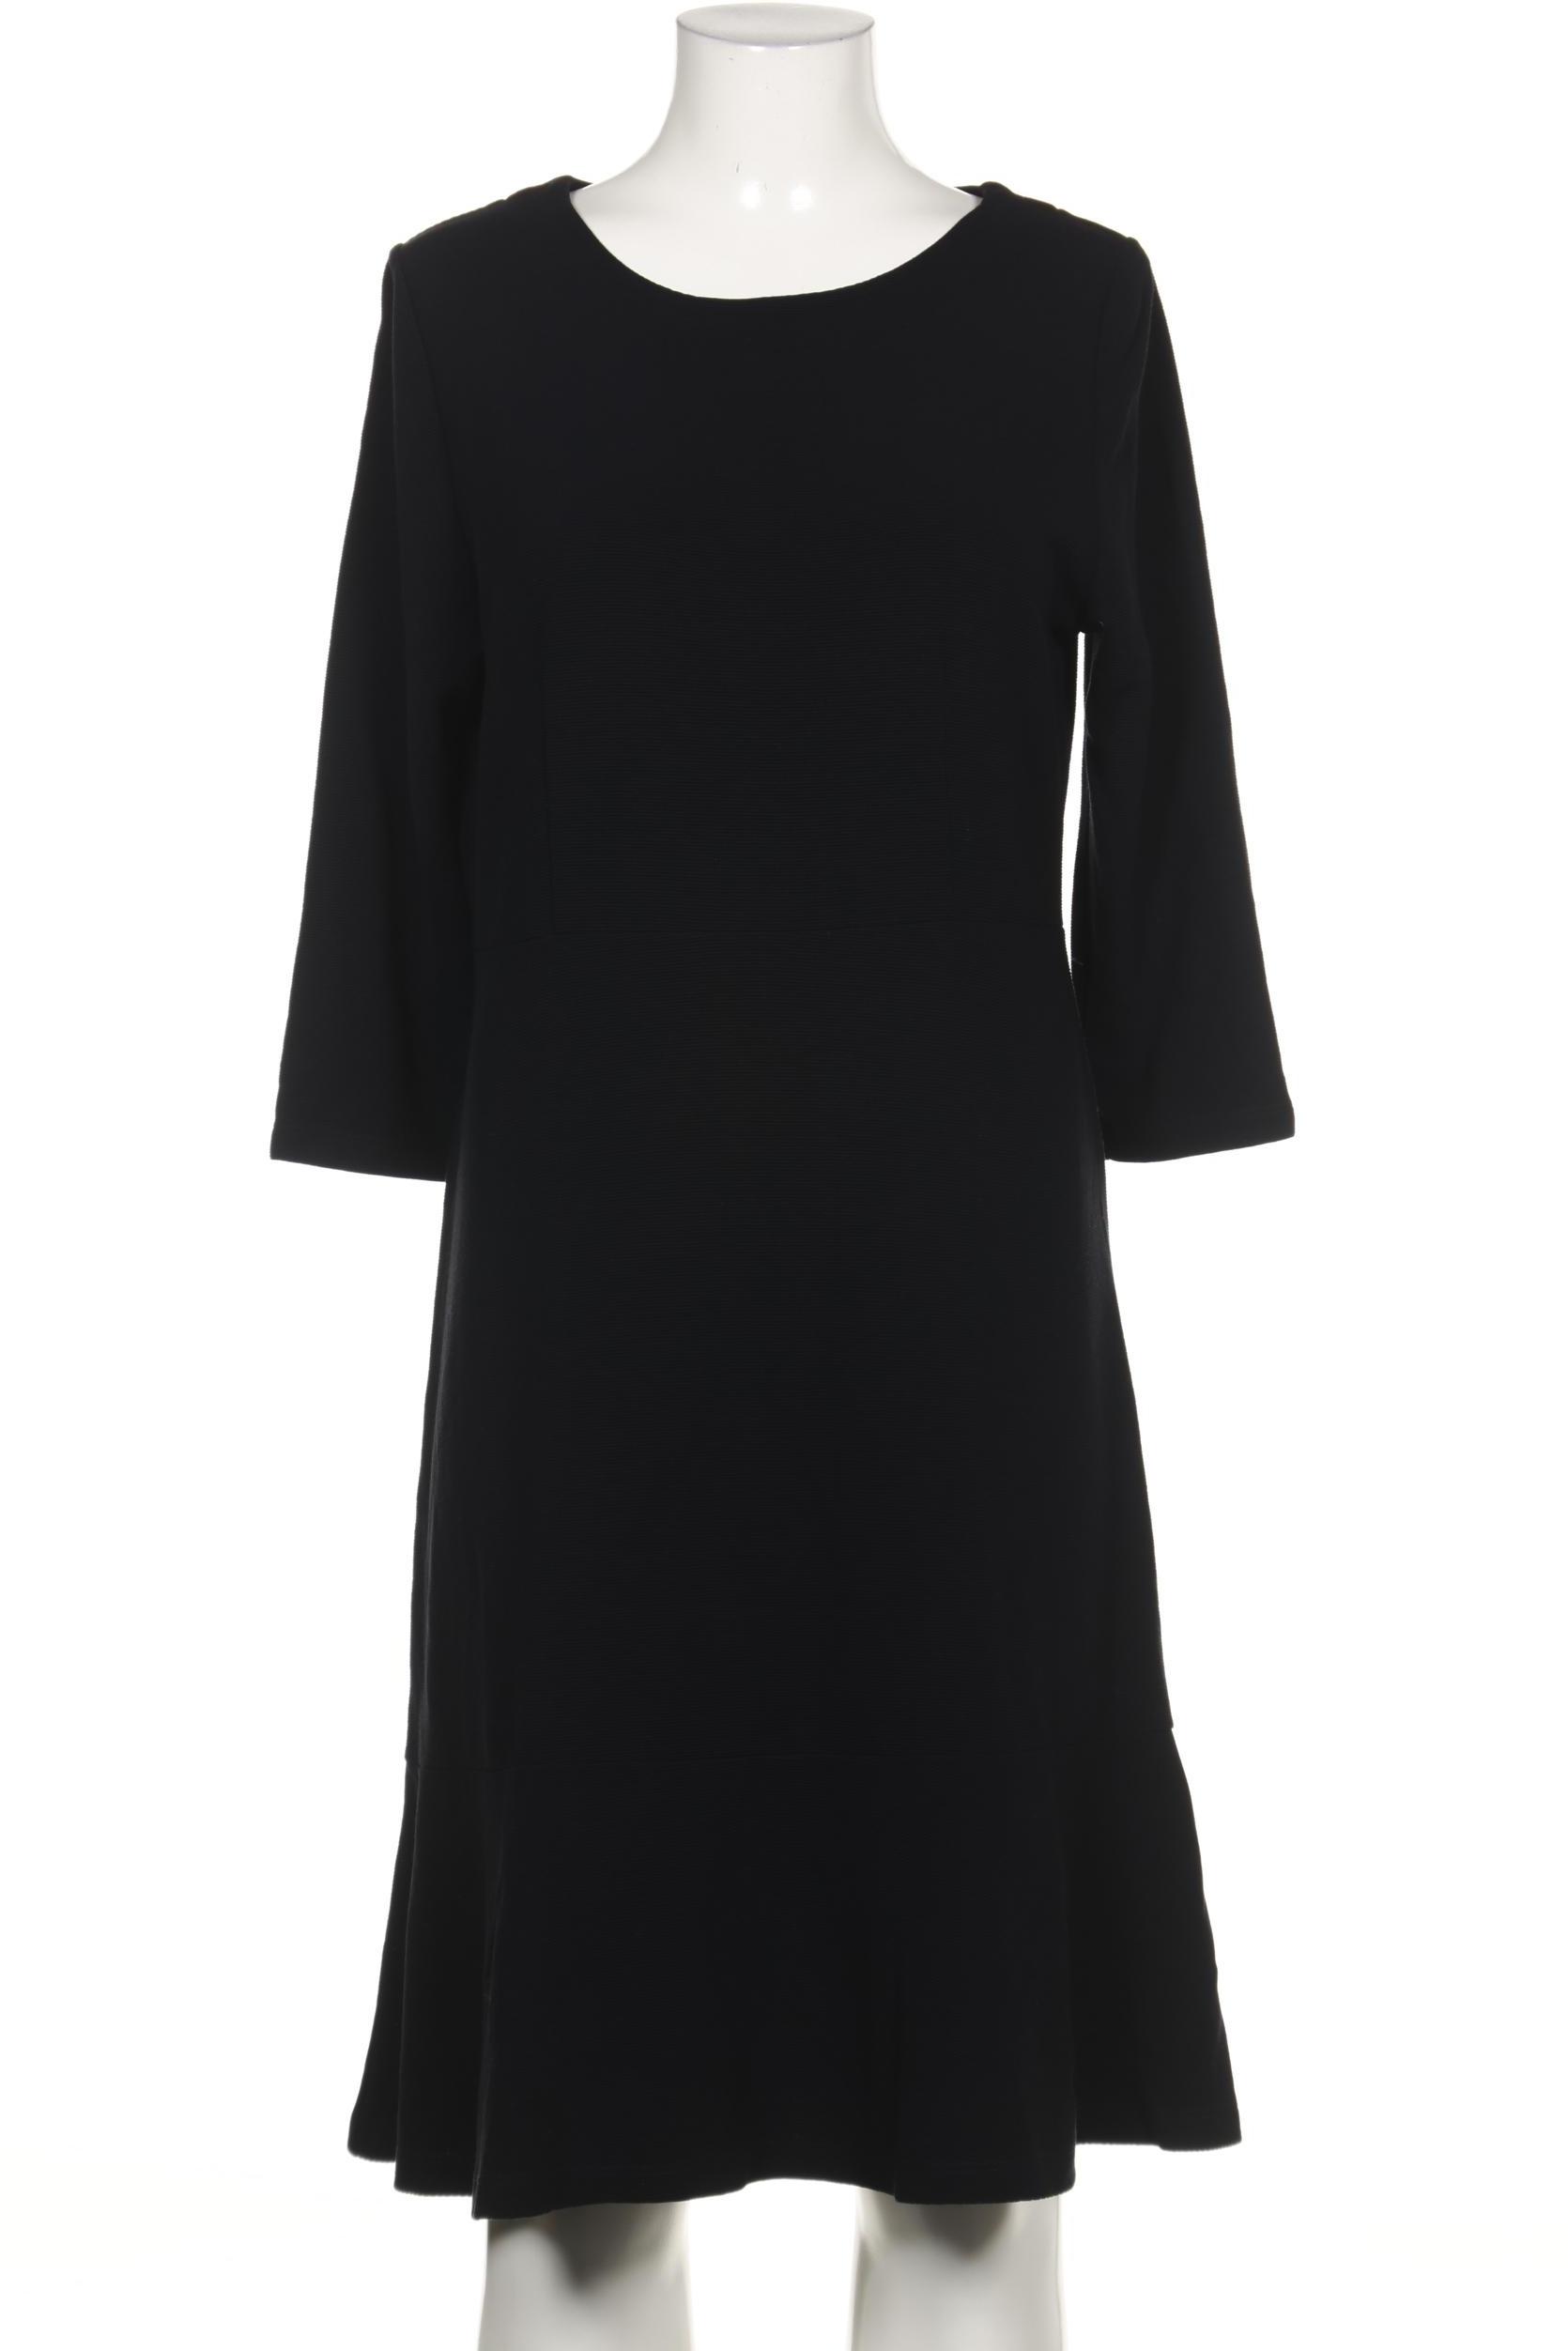 Alba Moda Damen Kleid, schwarz von alba moda